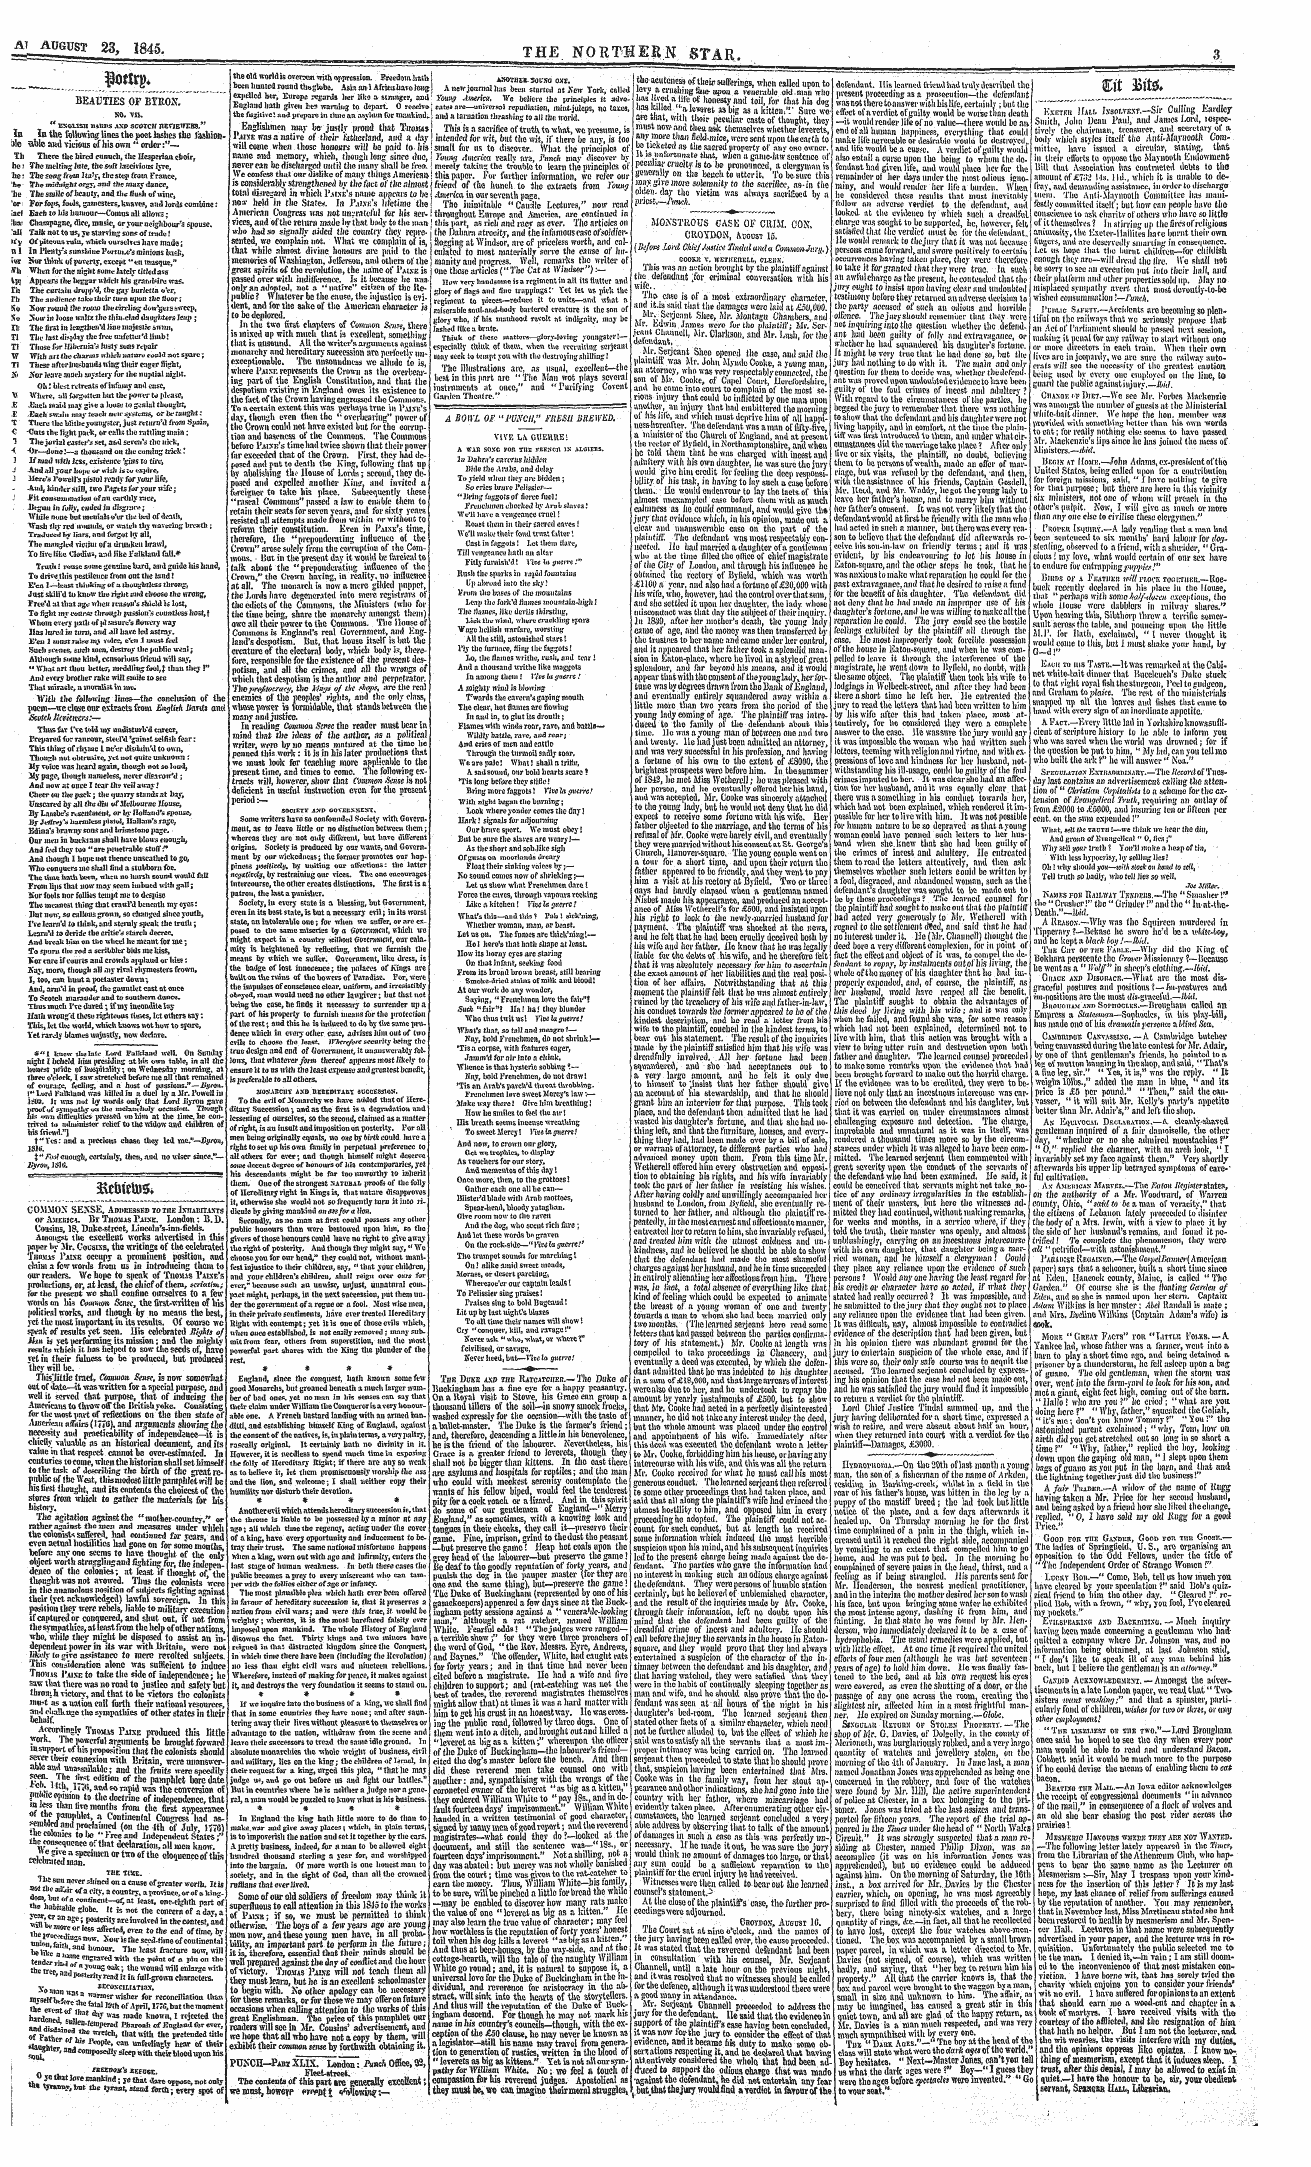 Northern Star (1837-1852): jS F Y, 3rd edition - ; Wm&Gt;